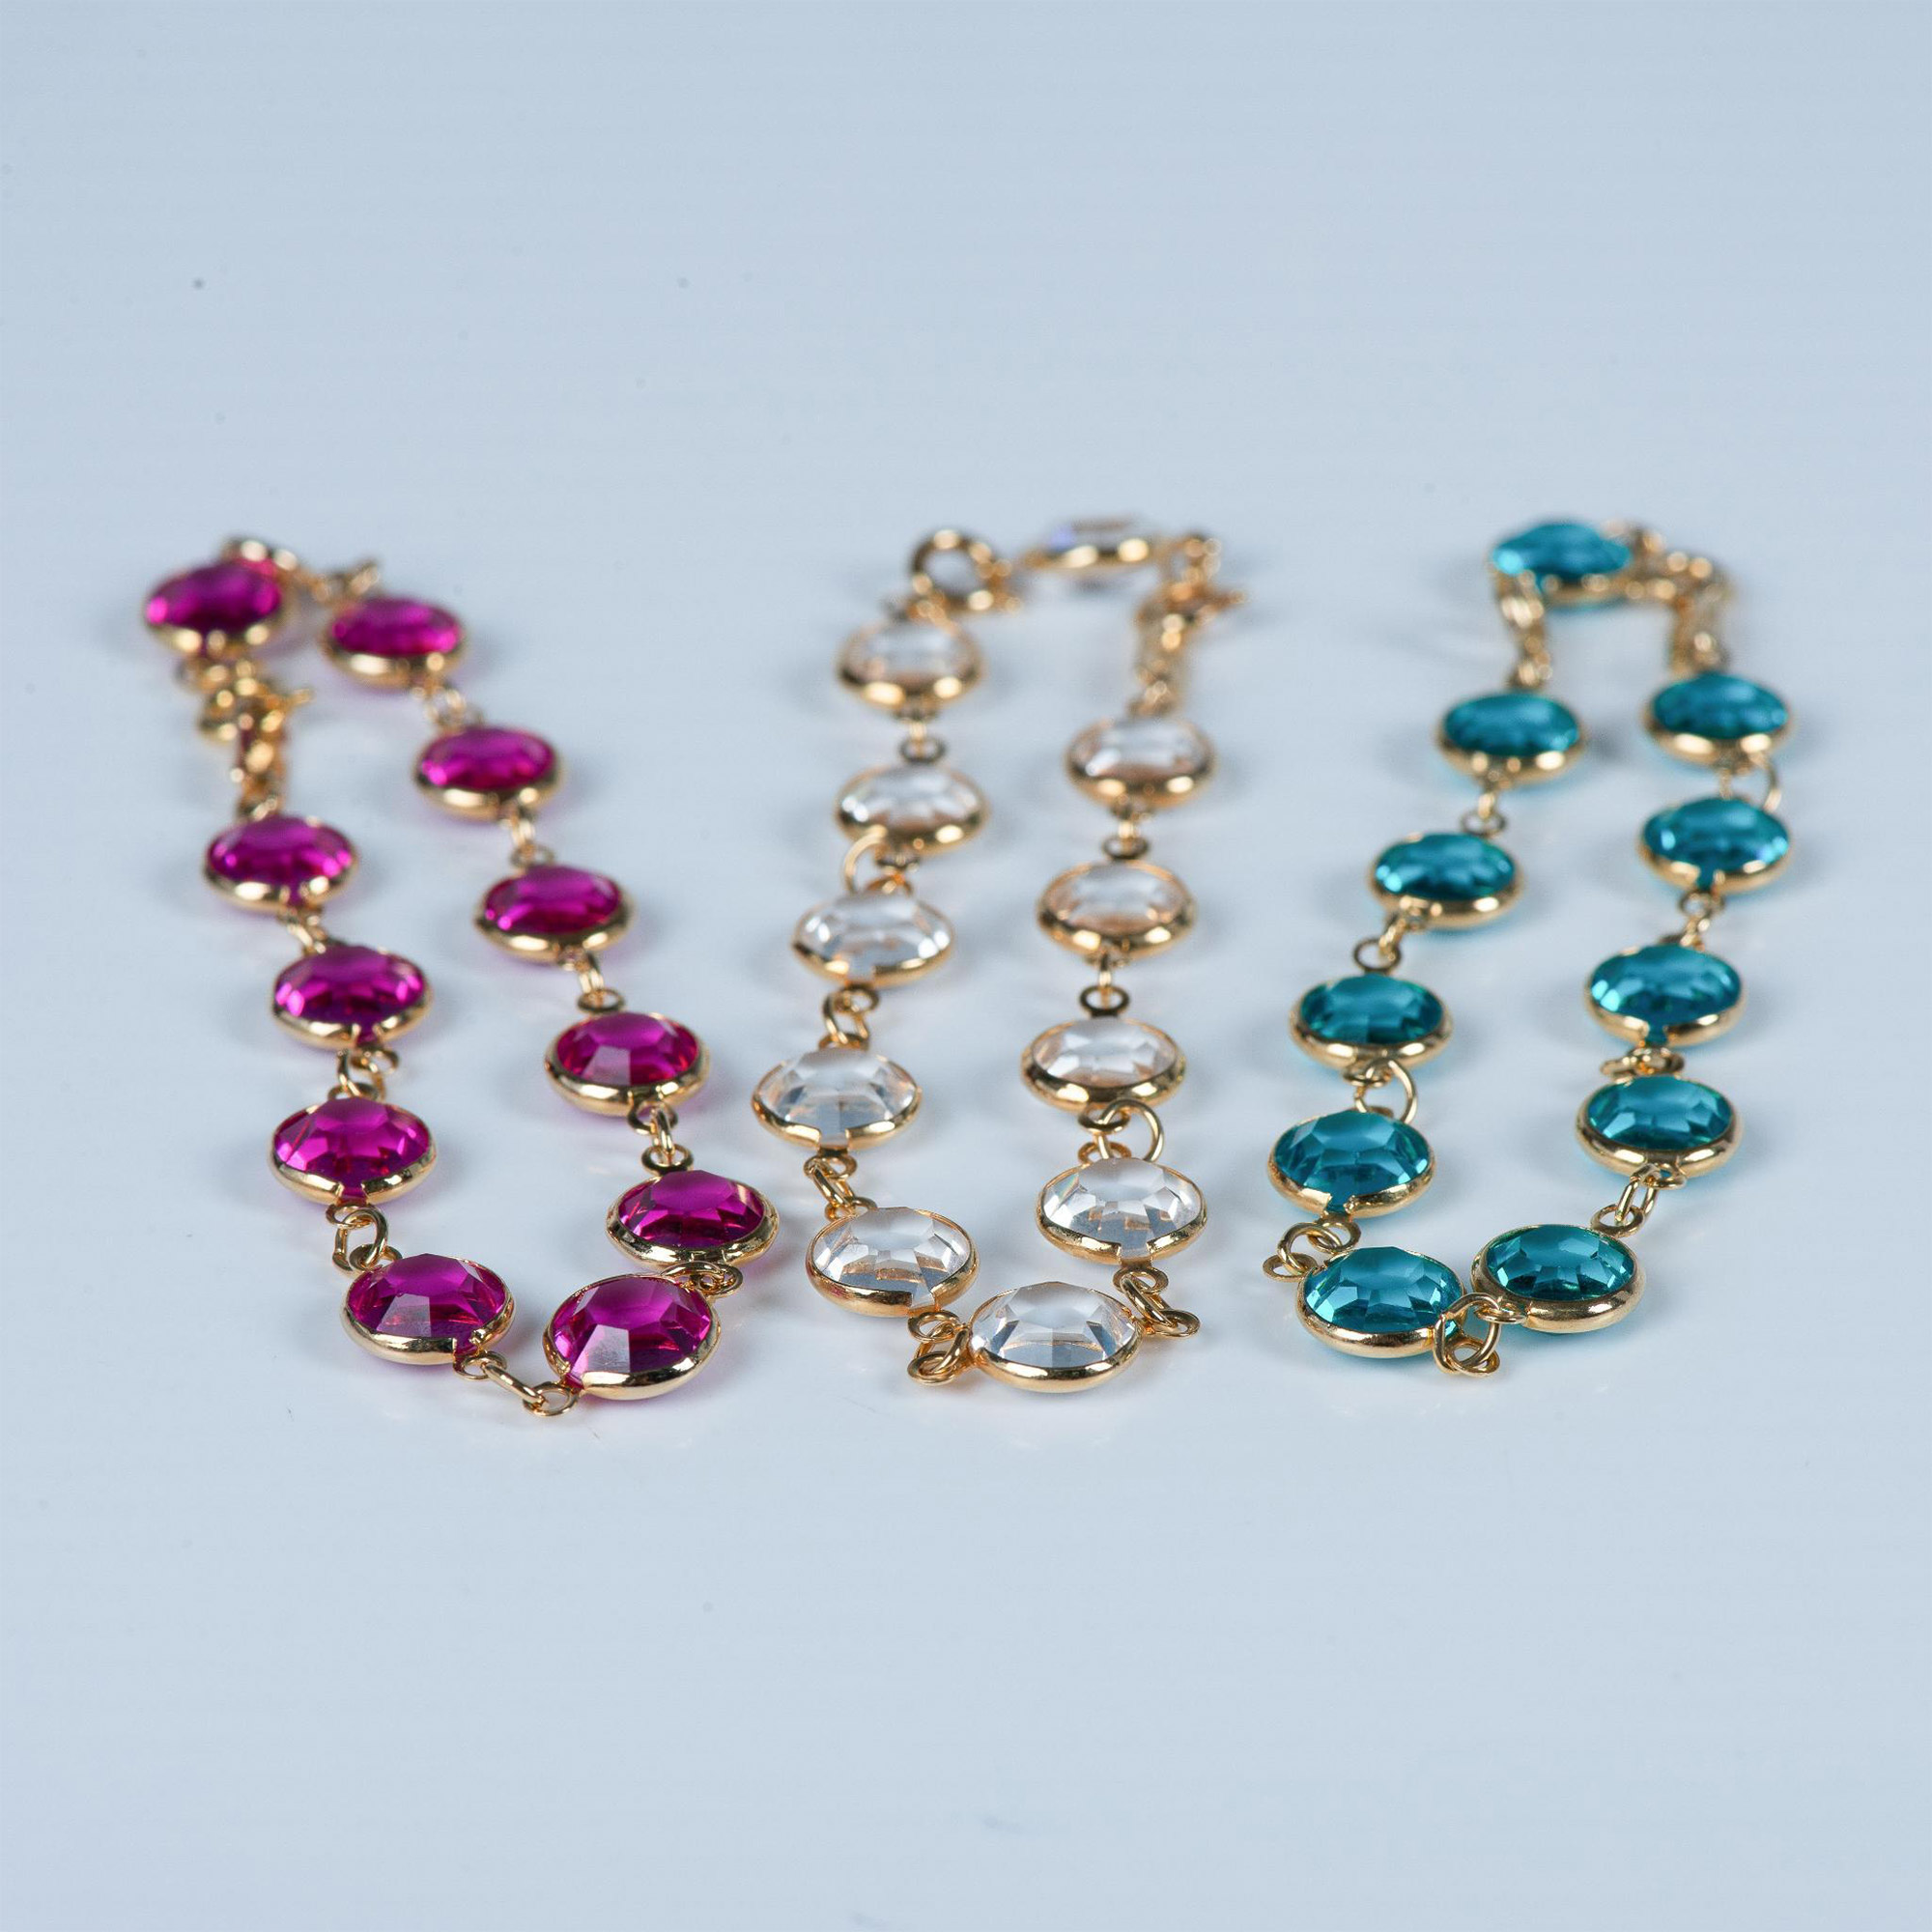 3pc Swarovski Teal, Pink & Clear Crystal Link Bracelets - Image 2 of 5